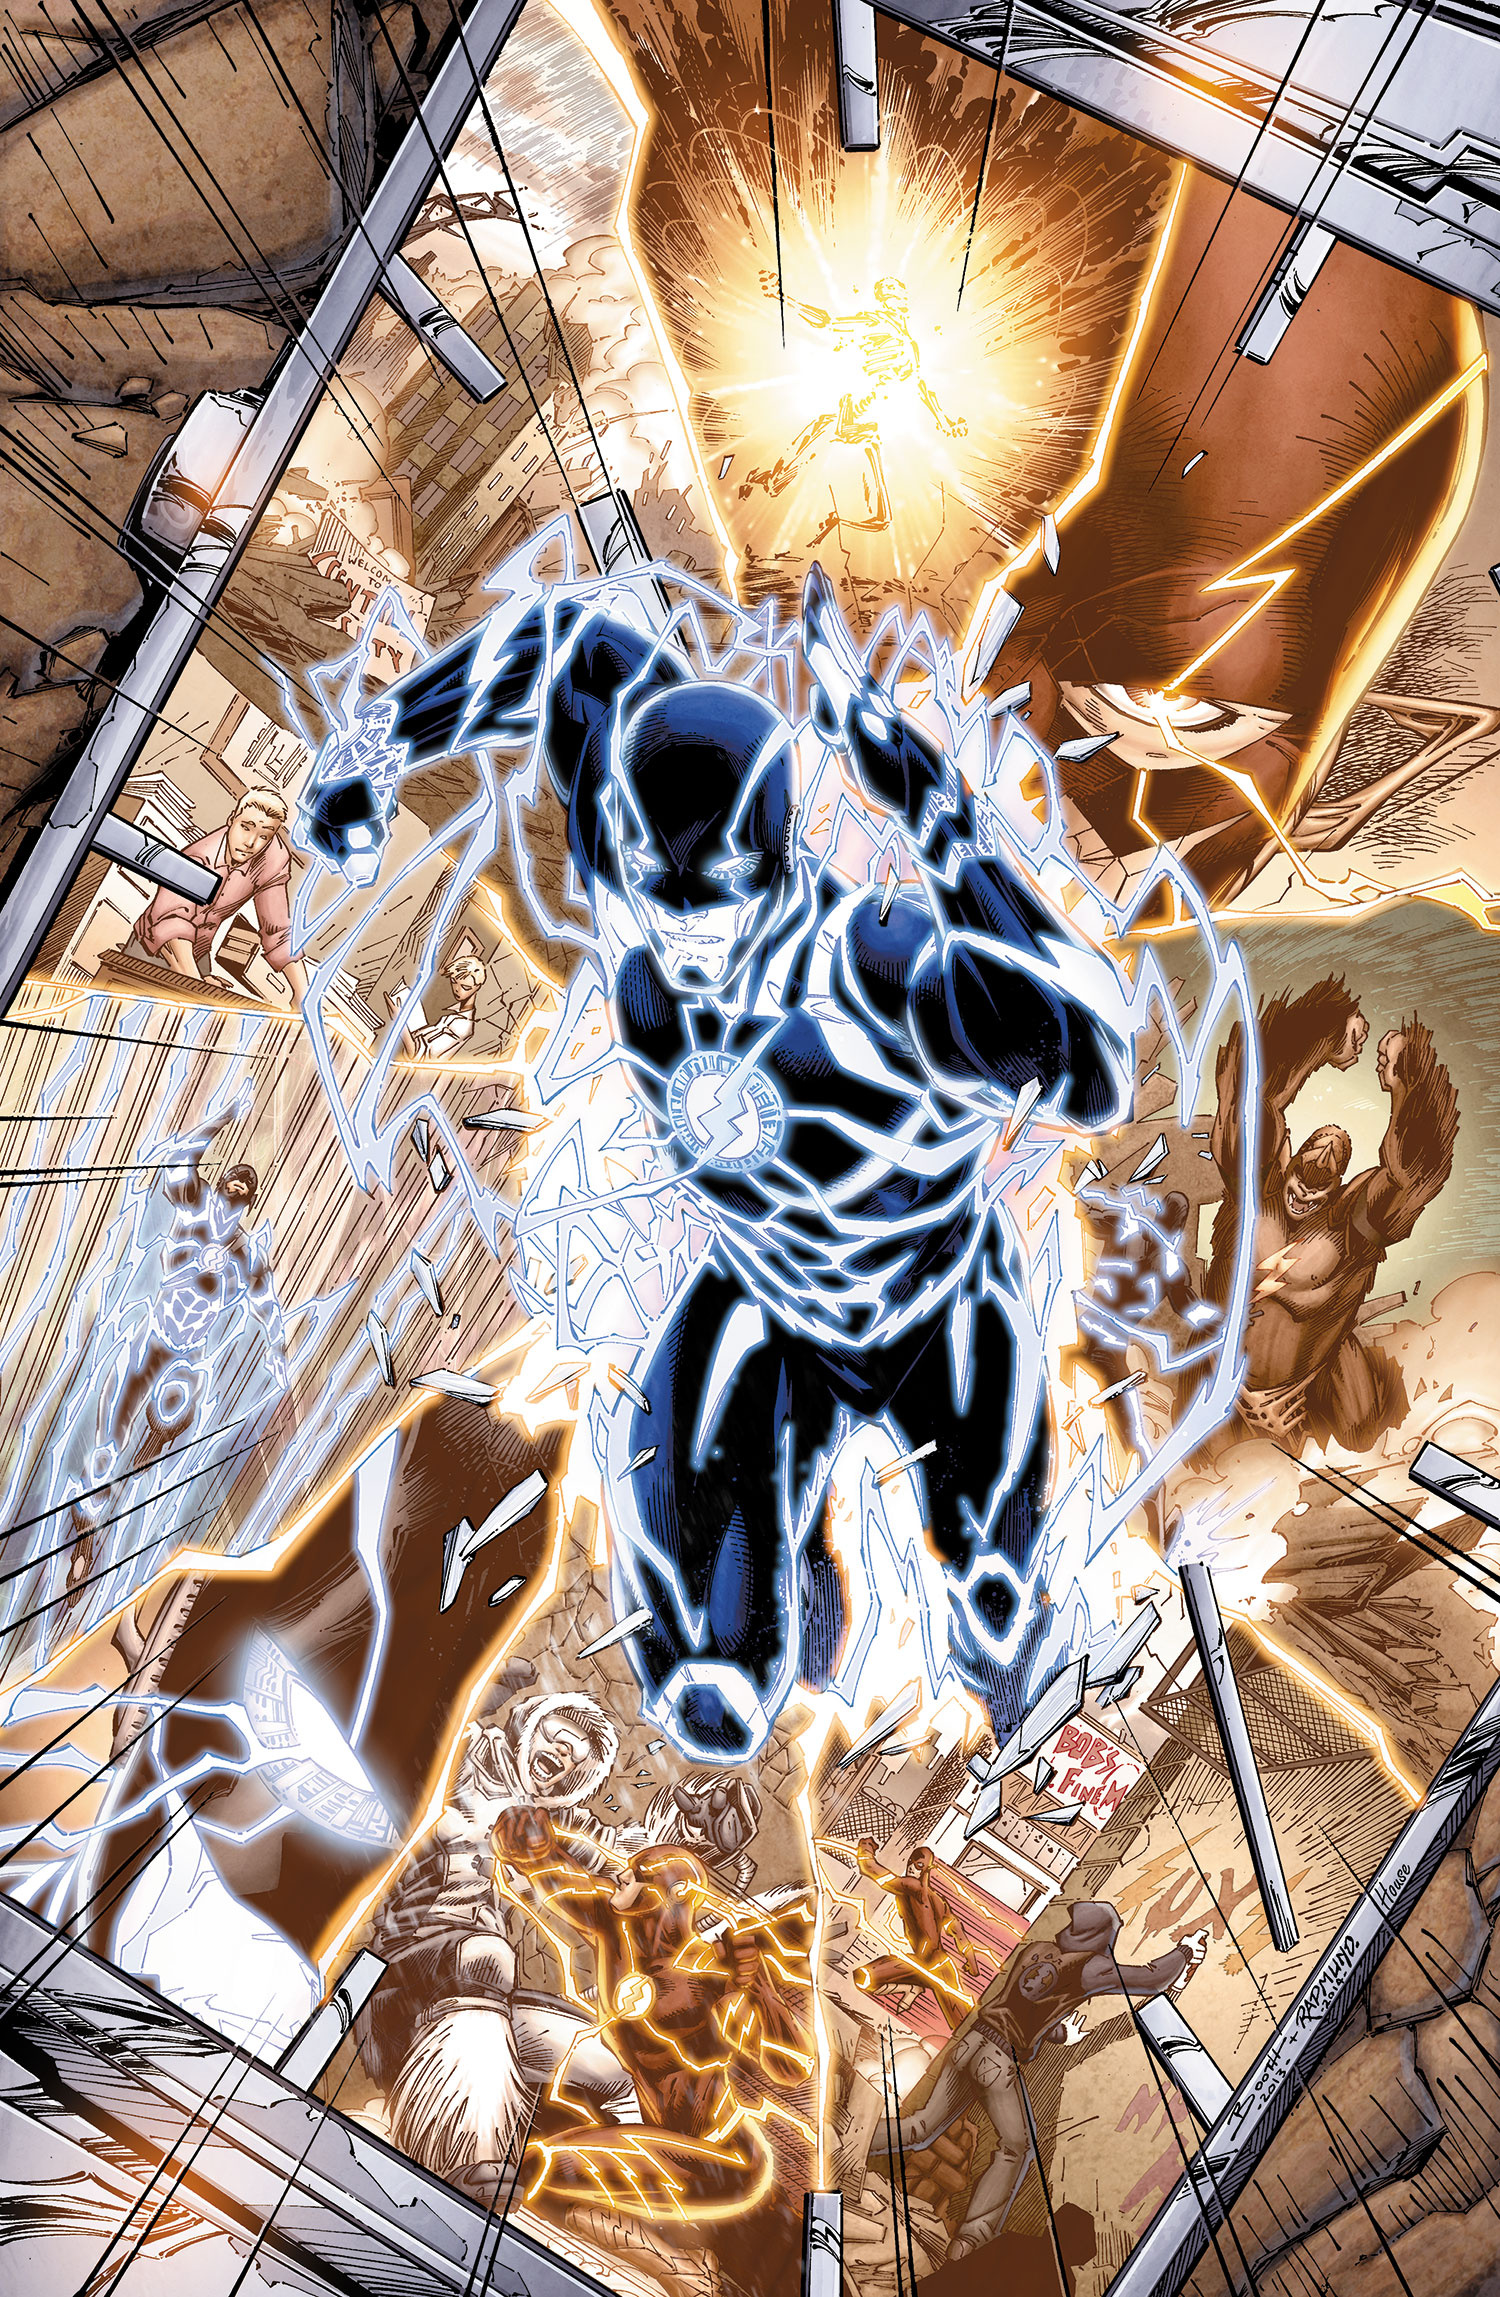 The Flash (comic book) - Wikipedia